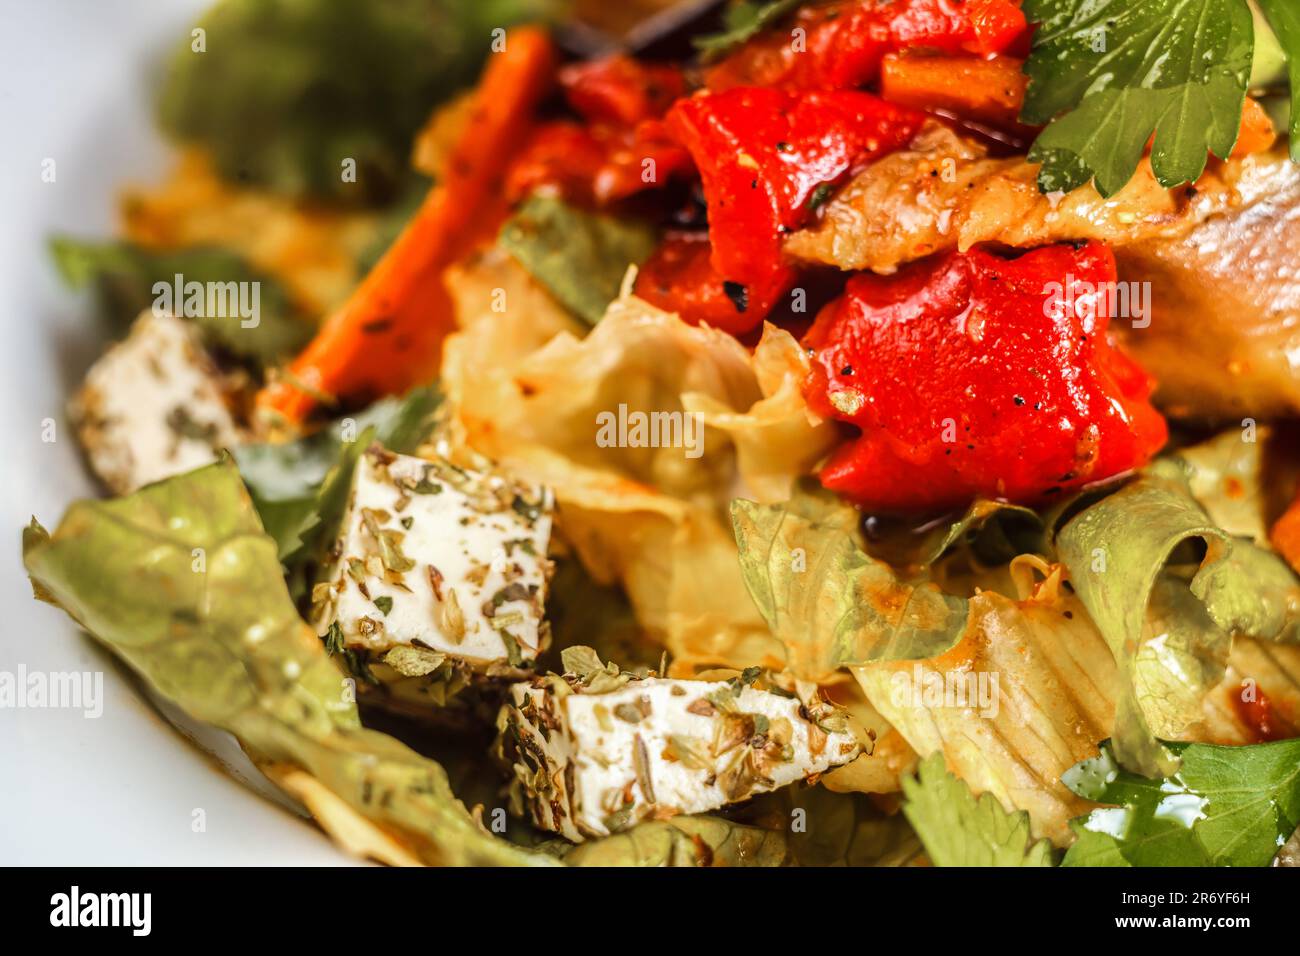 Eine gesunde Mahlzeit aus frischem Obst, Gemüse und Rindfleisch mit einem Beilagensalat auf einem Teller--die perfekte Kombination für Ihr Wohlbefinden. Stockfoto